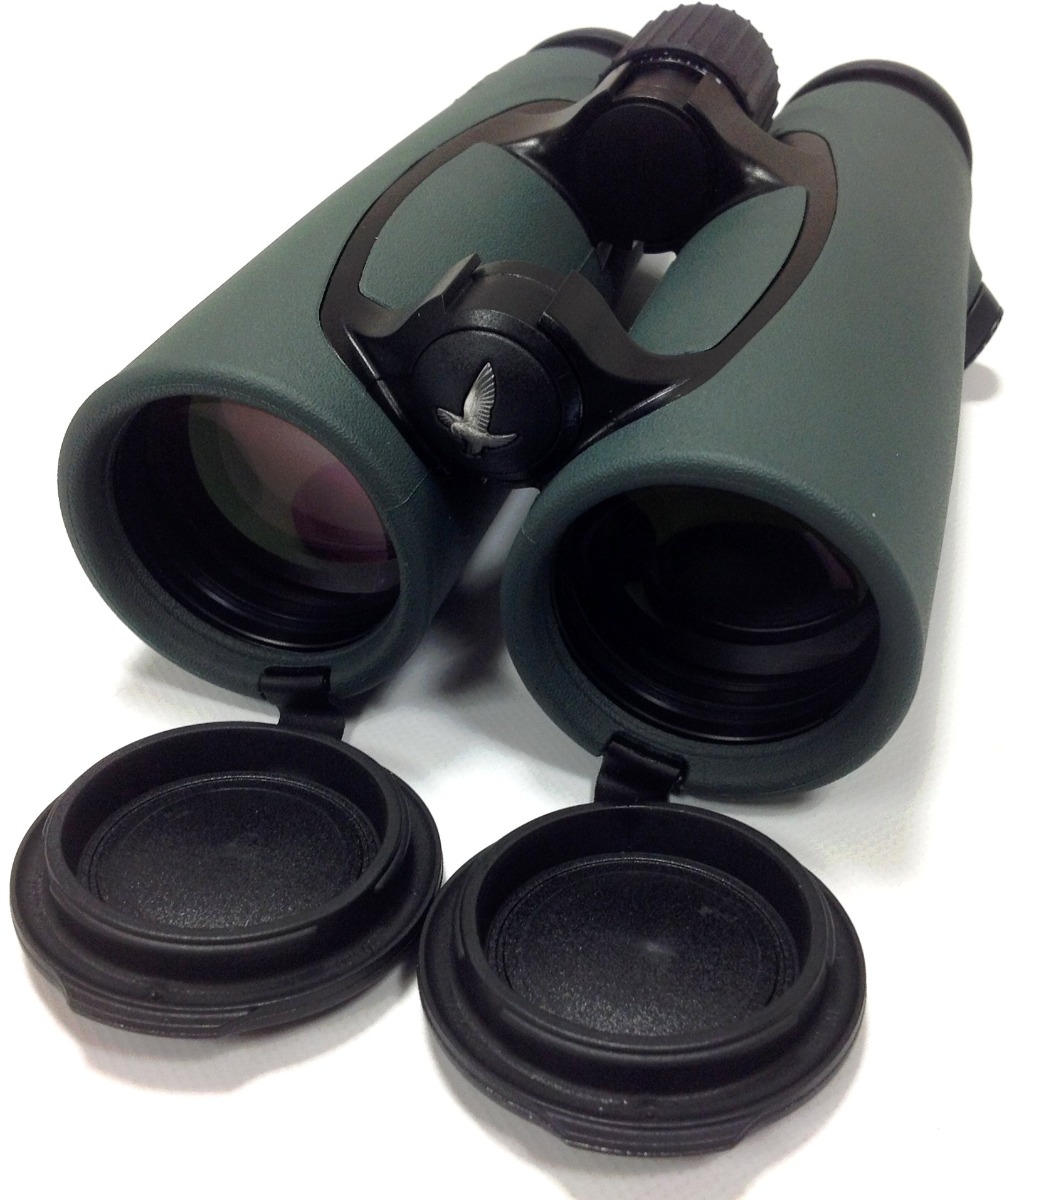 New Swaroxski 8x42 EL Binoculars